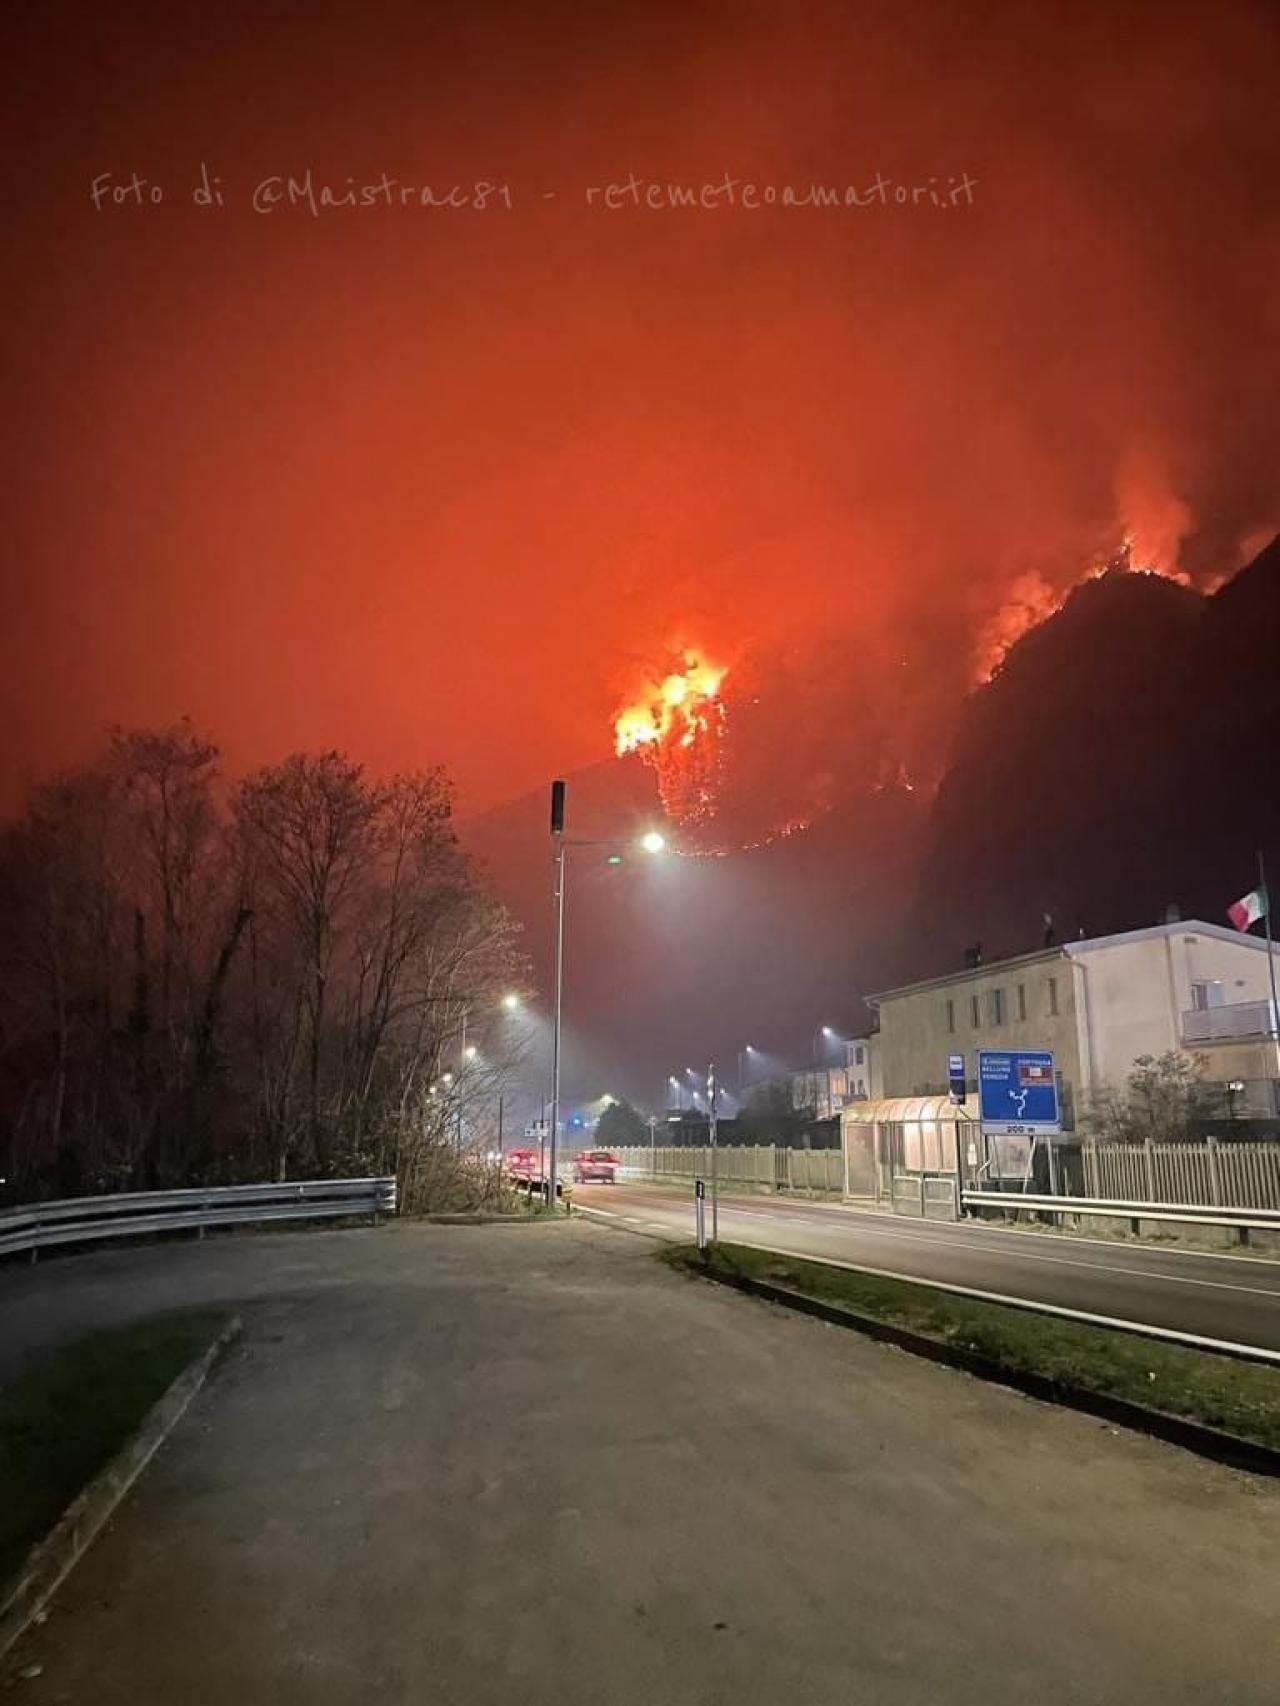 Il disastroso incendio boschivo sopra Longarone. Foto di @Maistrac81 via Rete Meteo Amatori